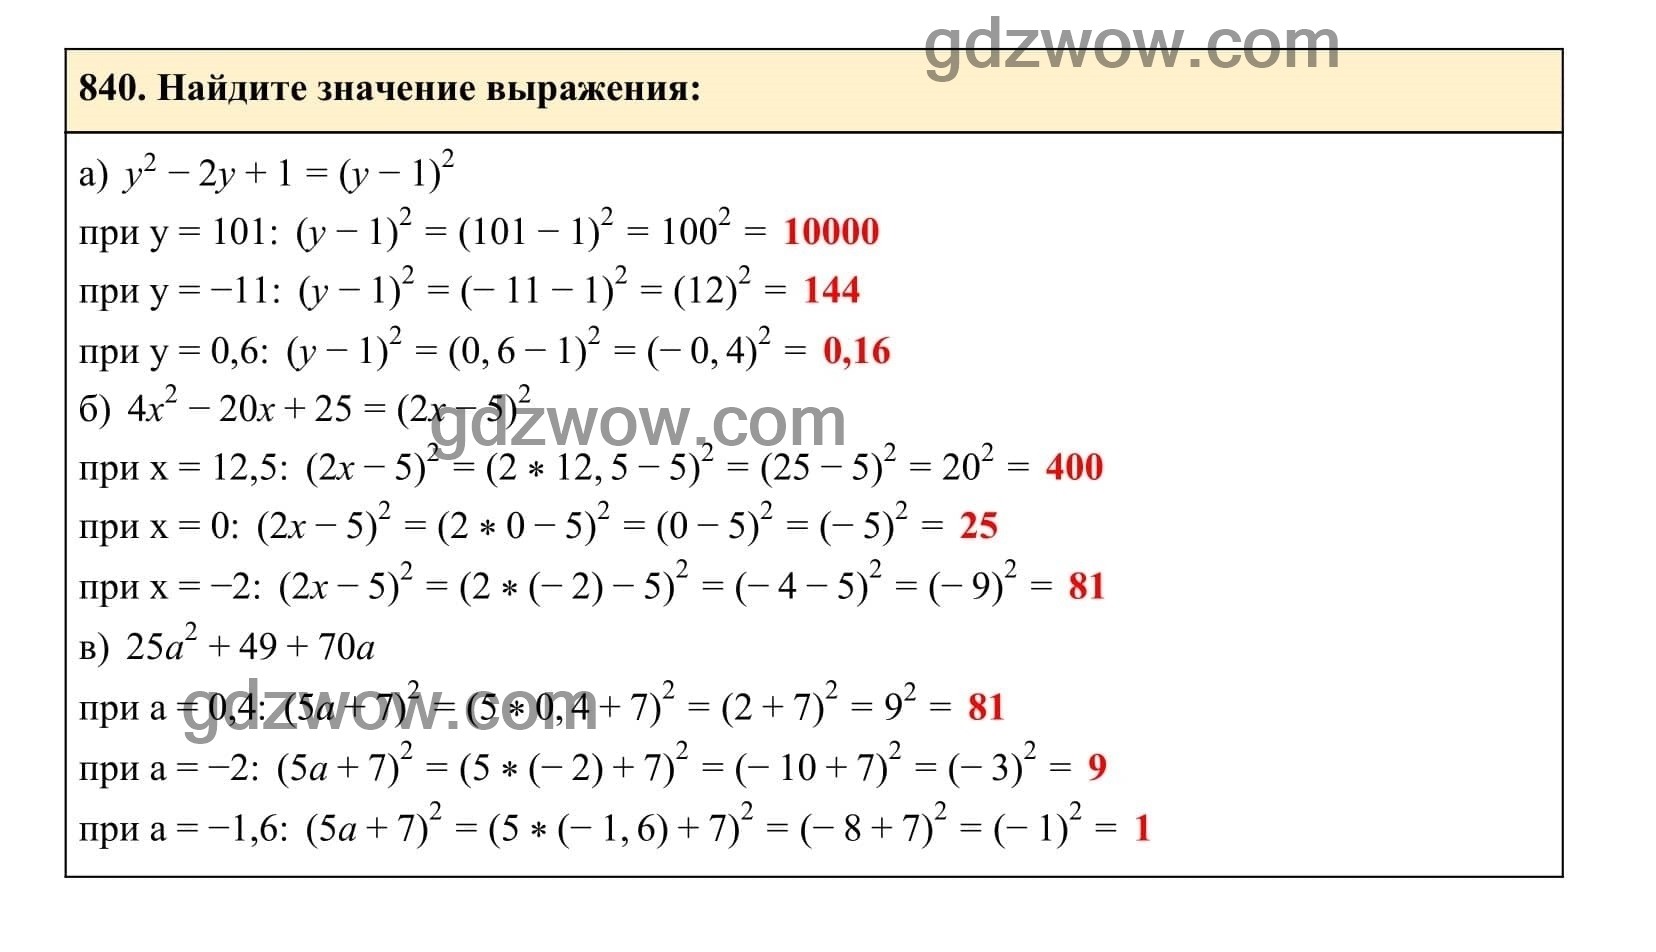 Упражнение 840 - ГДЗ по Алгебре 7 класс Учебник Макарычев (решебник) - GDZwow